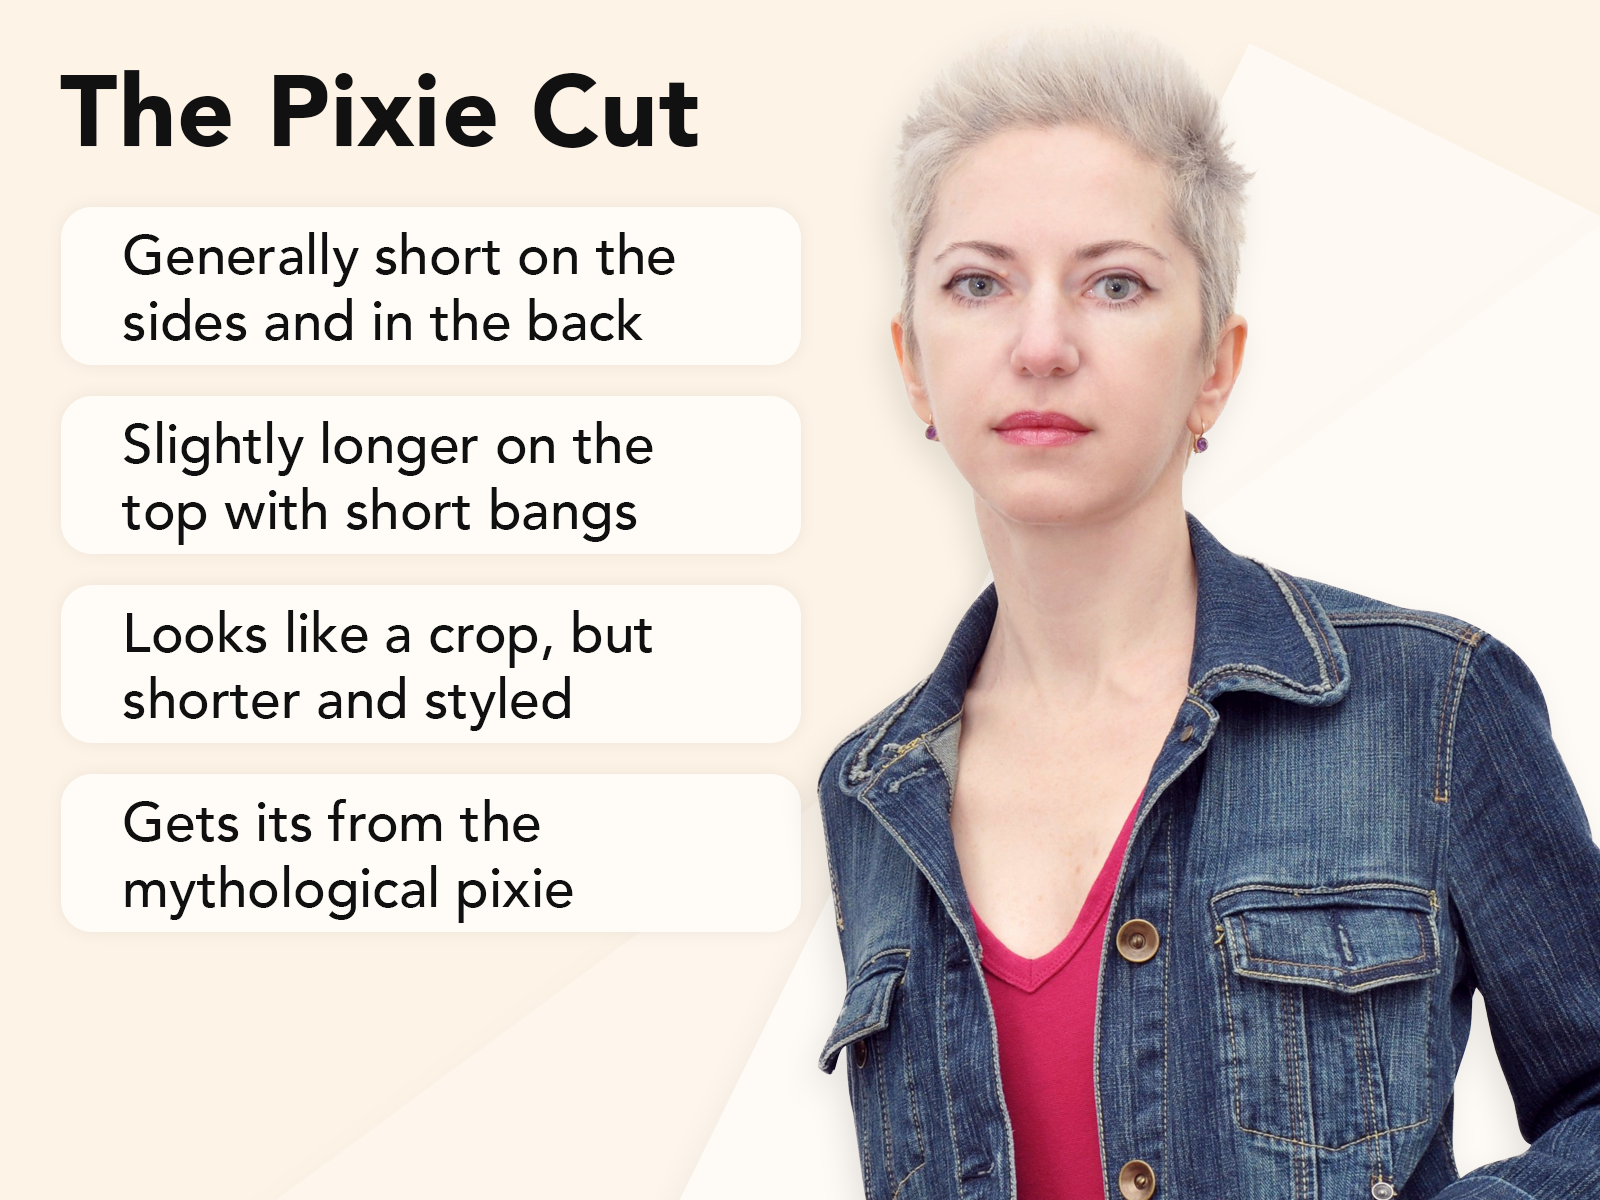 Pixie cut uitlegbeeld met belangrijkste kenmerken en een voorbeeld op een bruine achtergrond